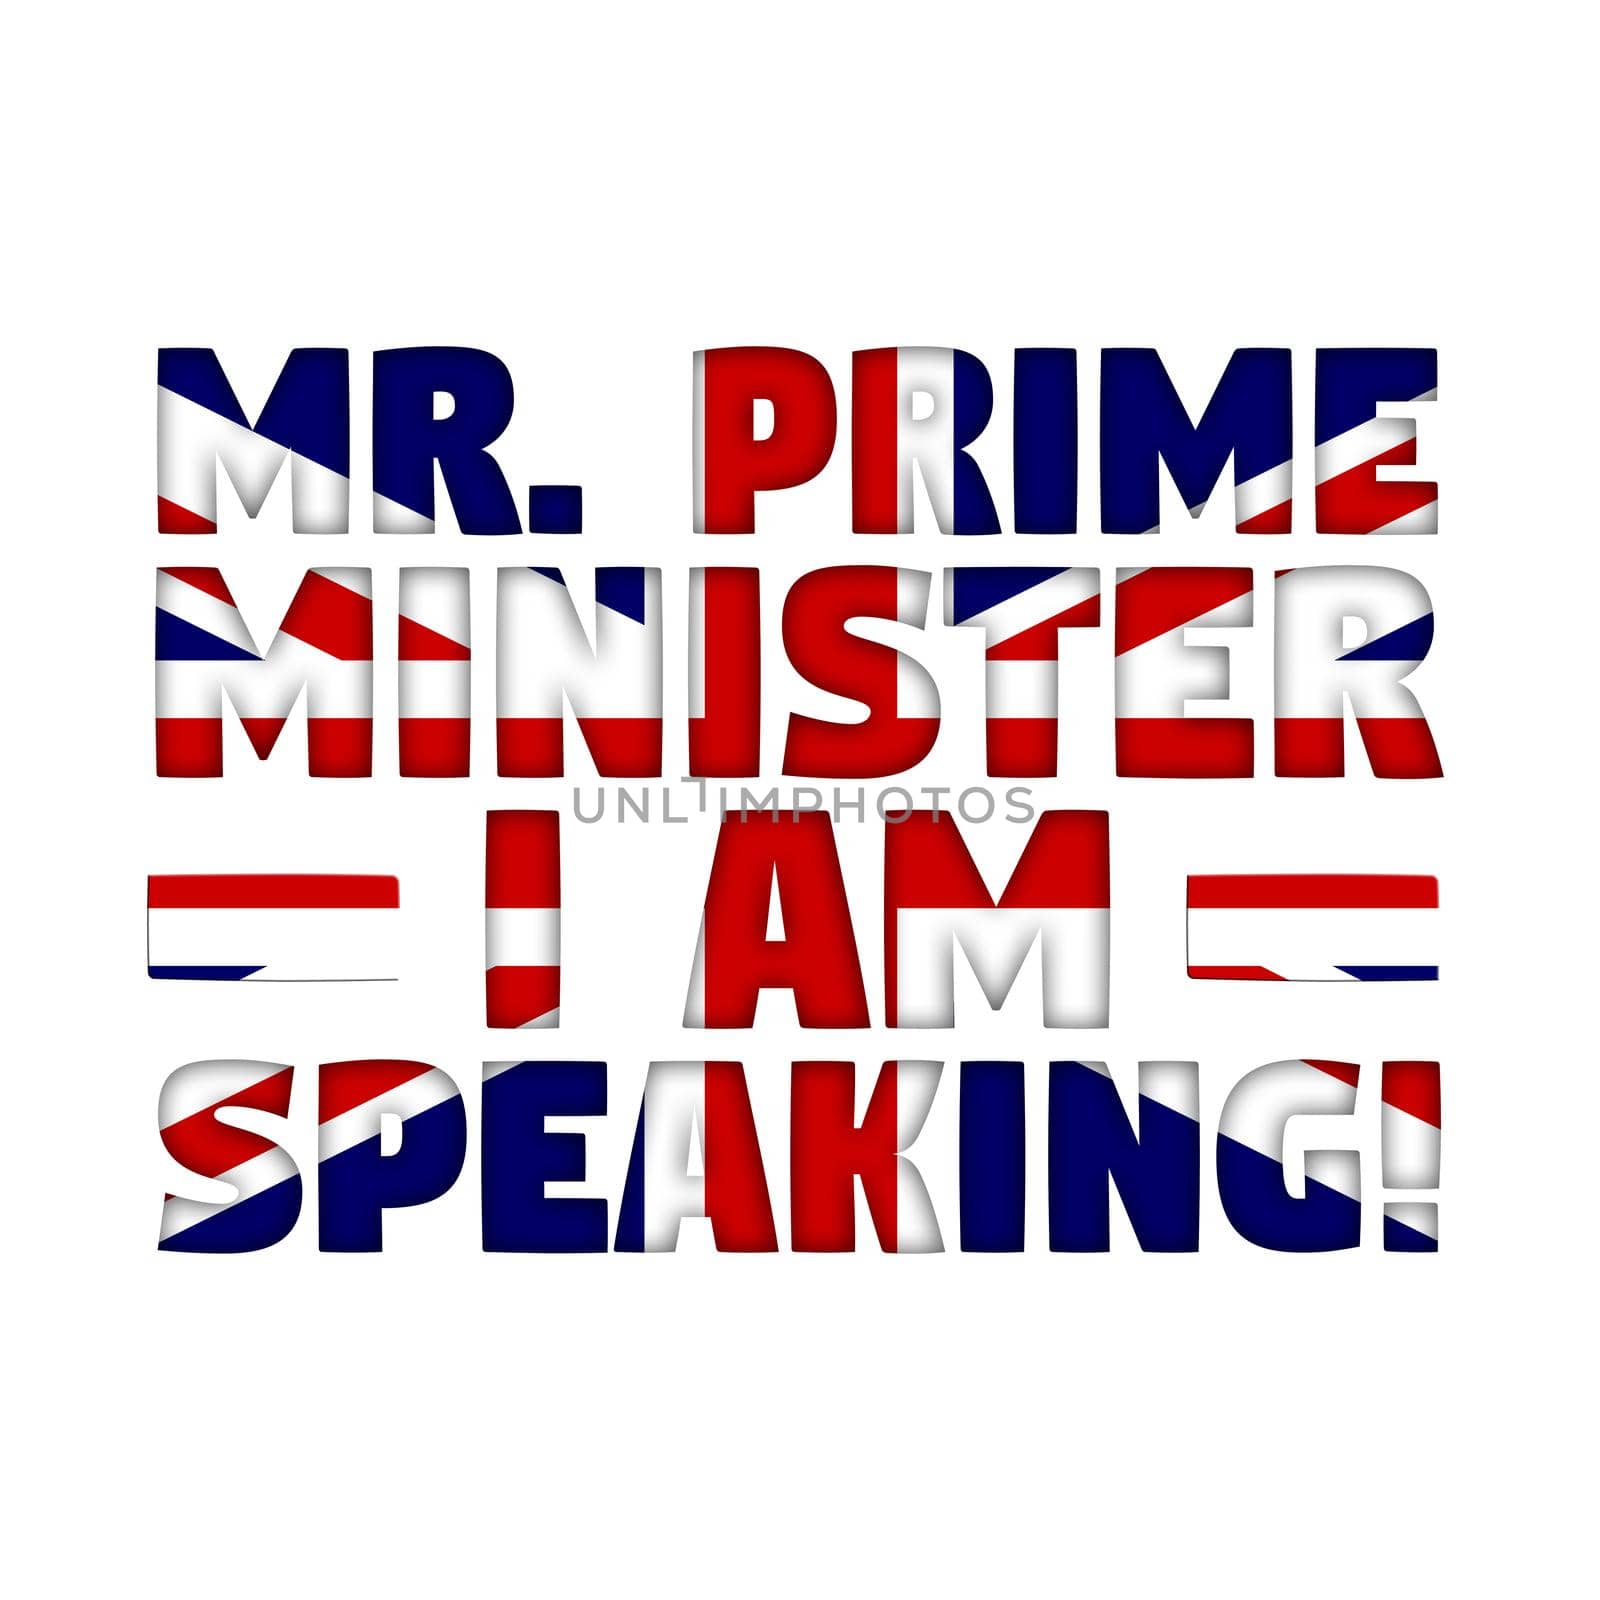 Mr Prime Minister